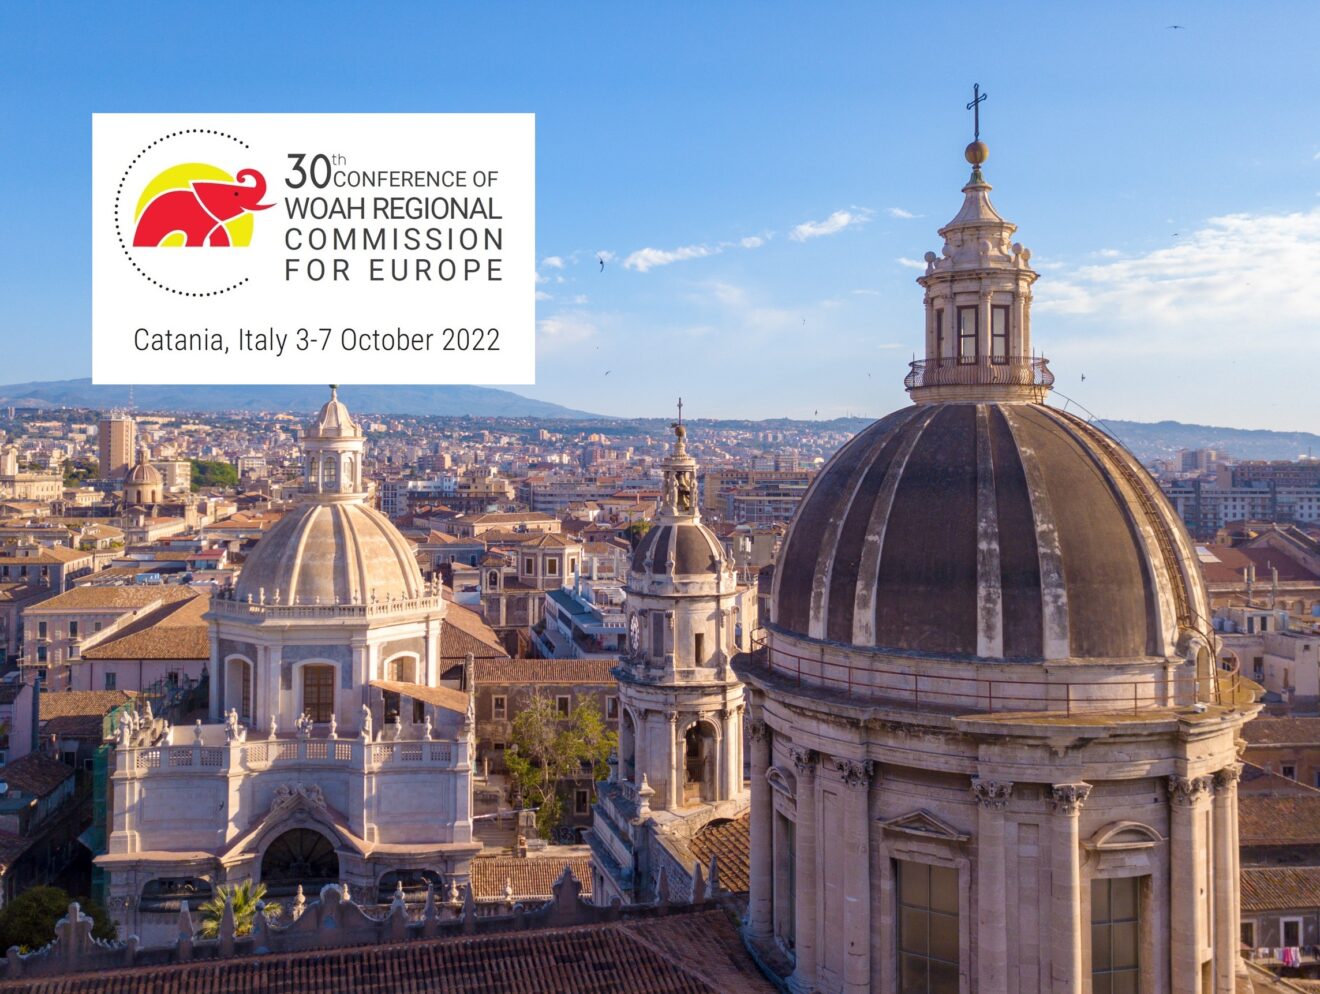 Partecipazione di IZSLER alla 30a Conferenza Regionale WOAH a Catania dal 3 al 7 ottobre